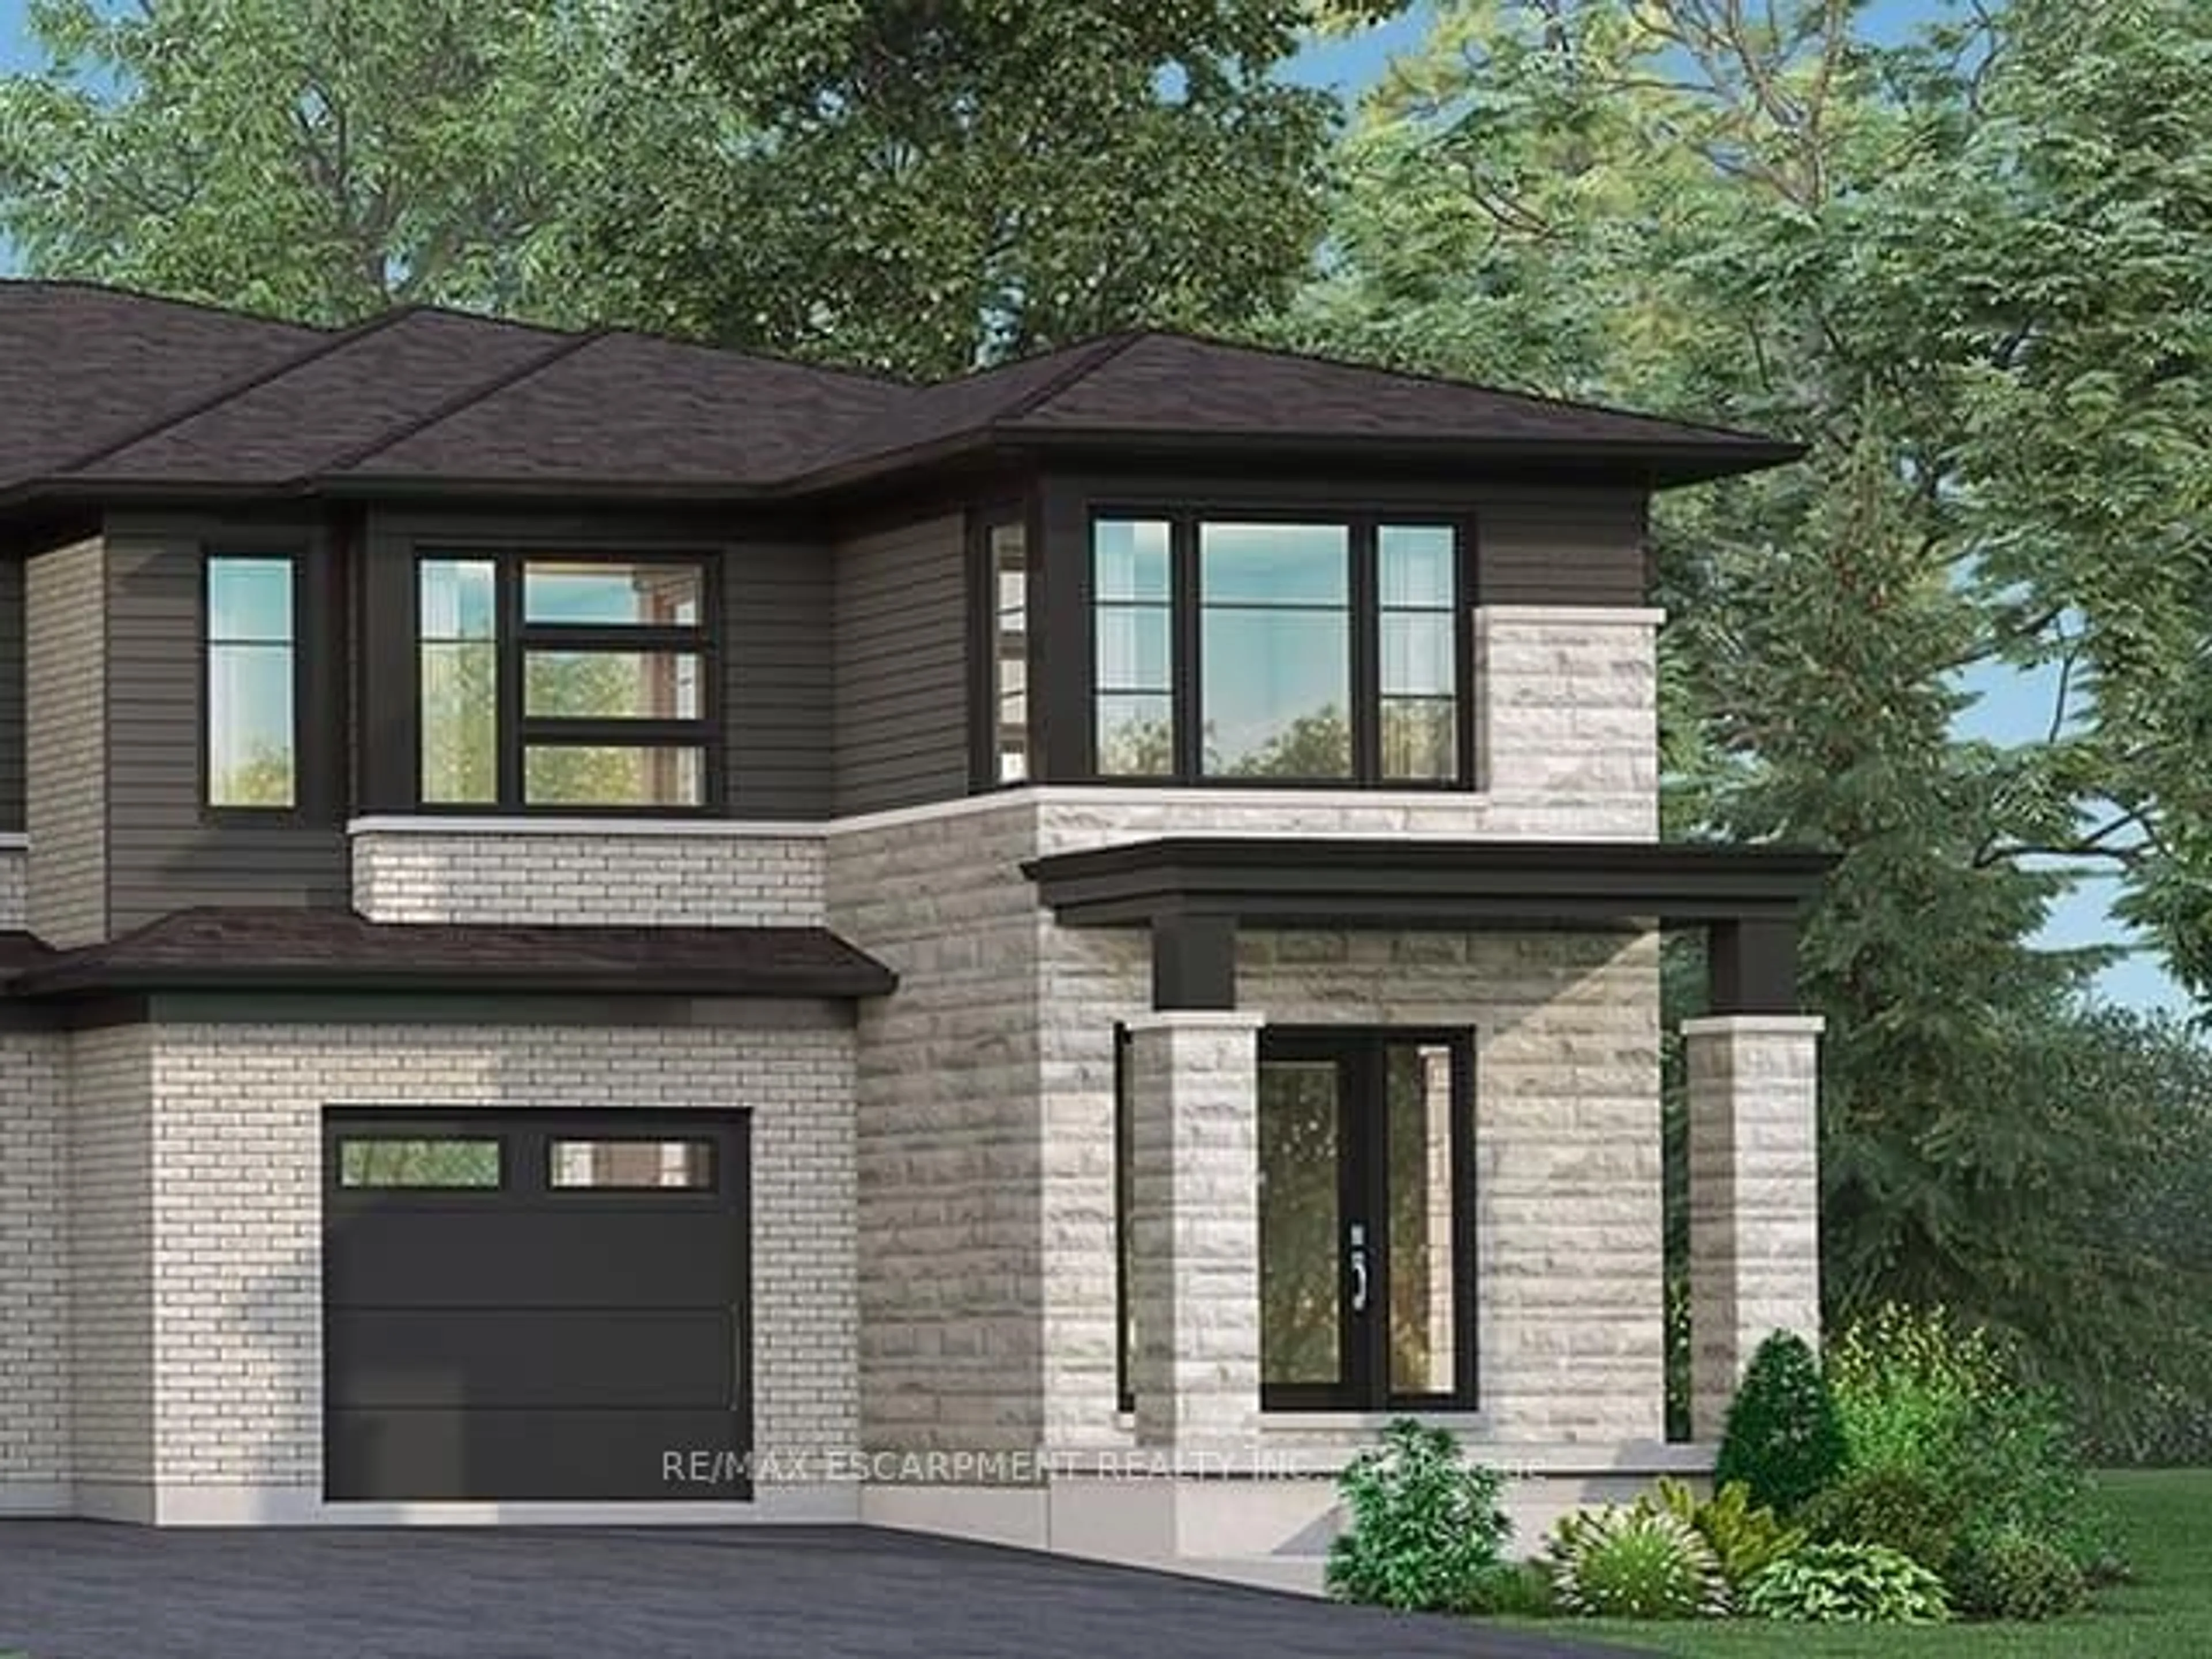 Home with brick exterior material for 69 Marie St, Pelham Ontario L0S 1E1